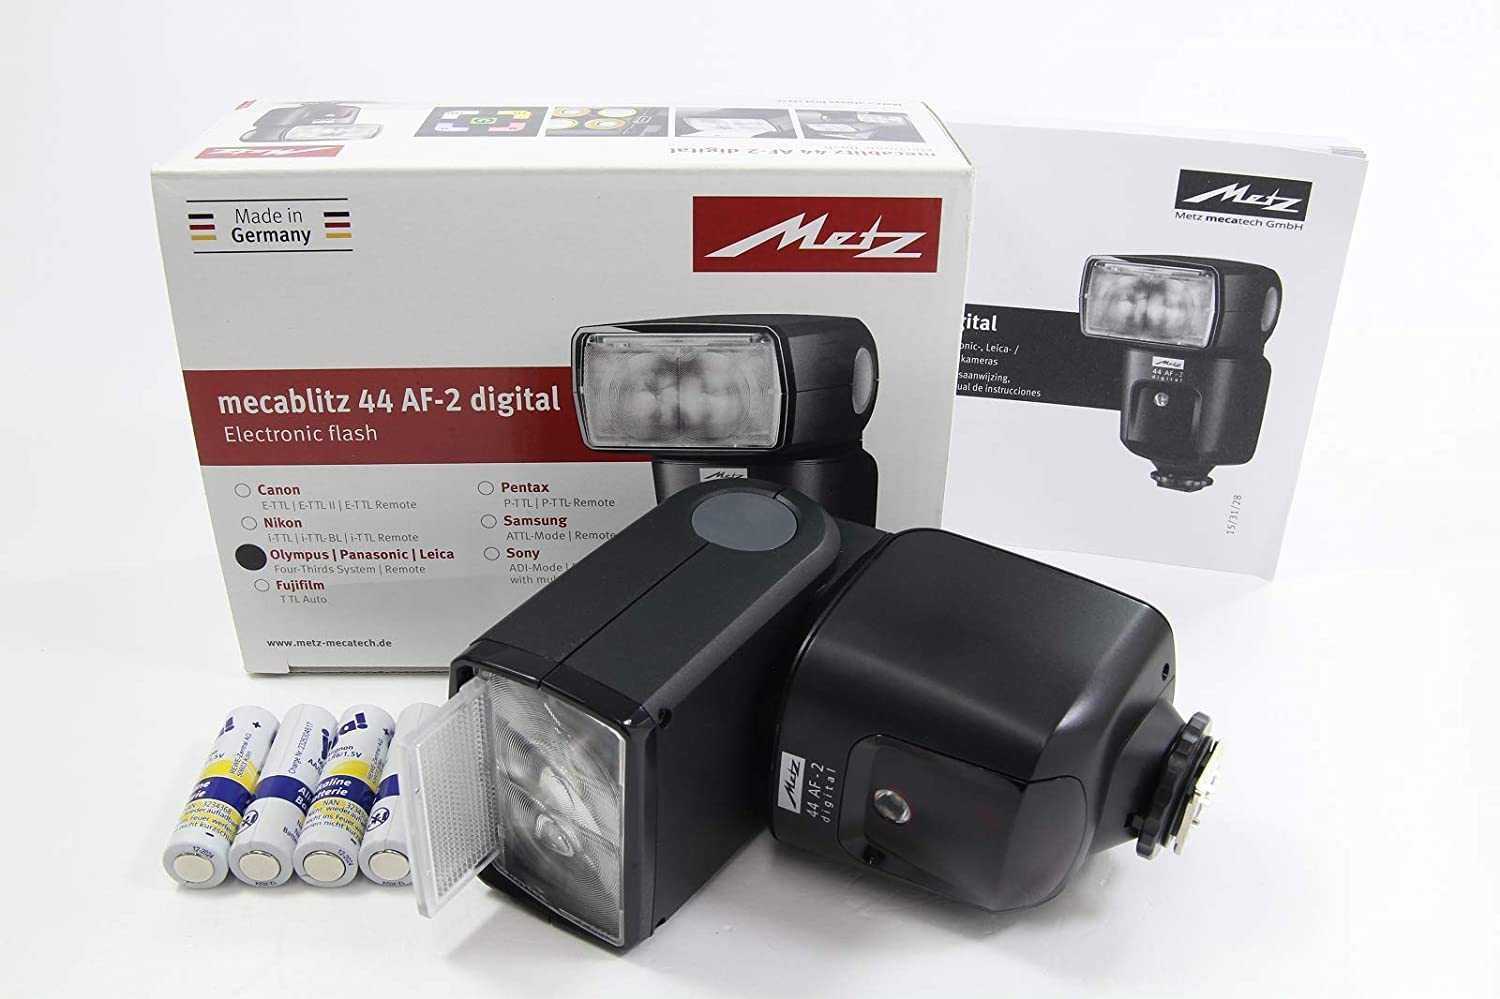 Metz mecablitz 24 af-1 digital for canon купить по акционной цене , отзывы и обзоры.